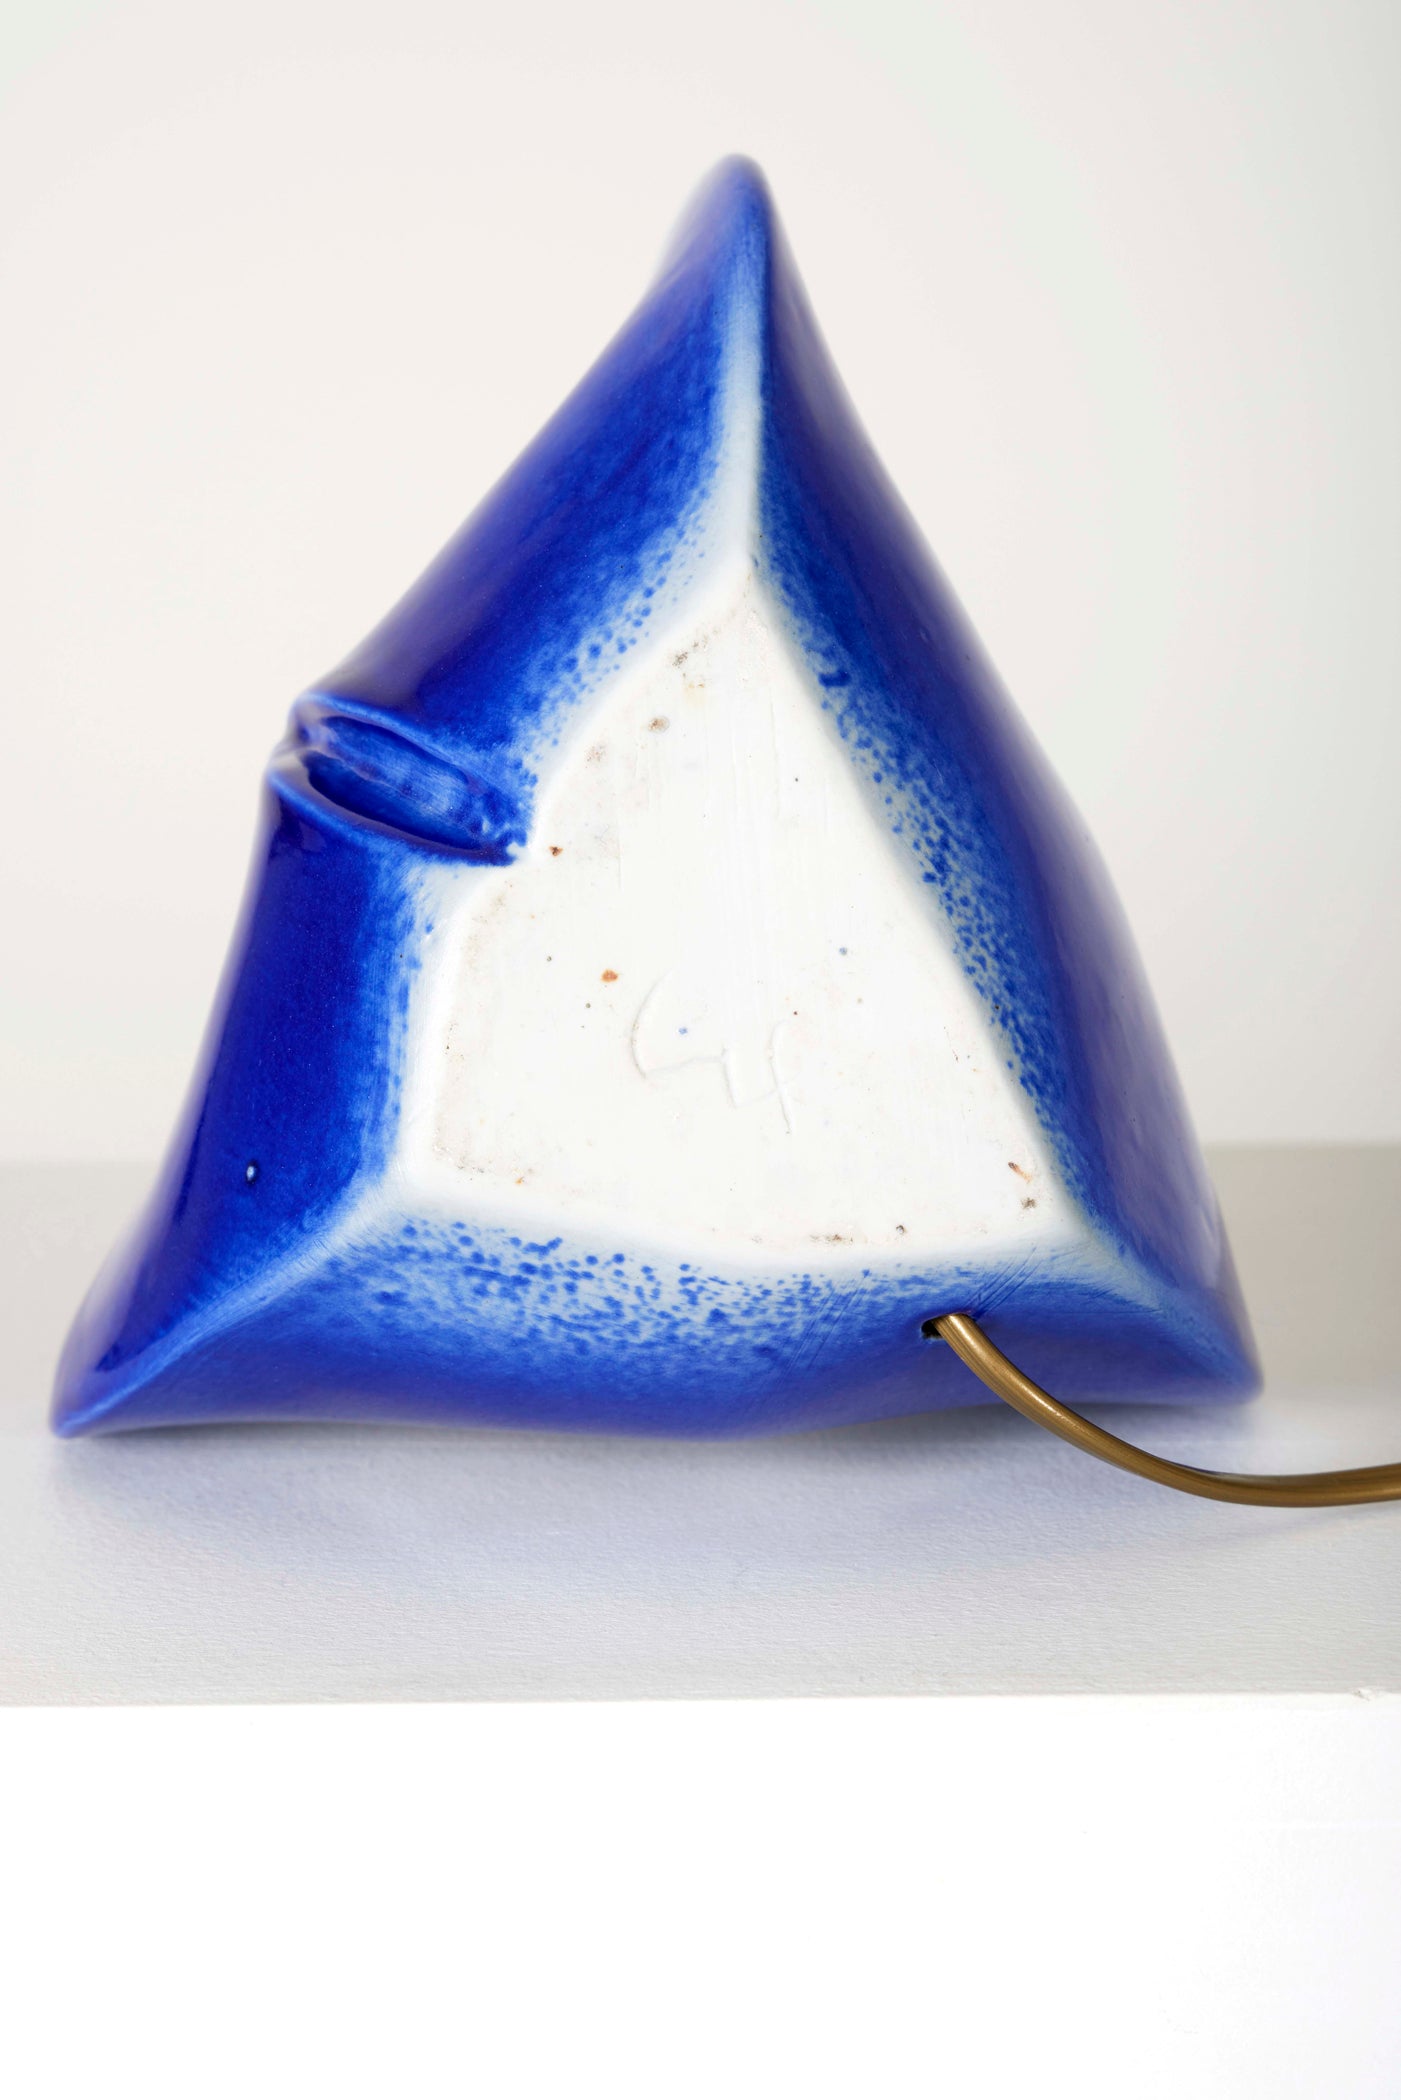 Lampe de bureau en céramique de Tim Orr, années 1970. Lampe en céramique émaillée bleu azur. Estampillée sous la lampe. Très bon état et fonctionnelle. Vendue sans abat-jour.